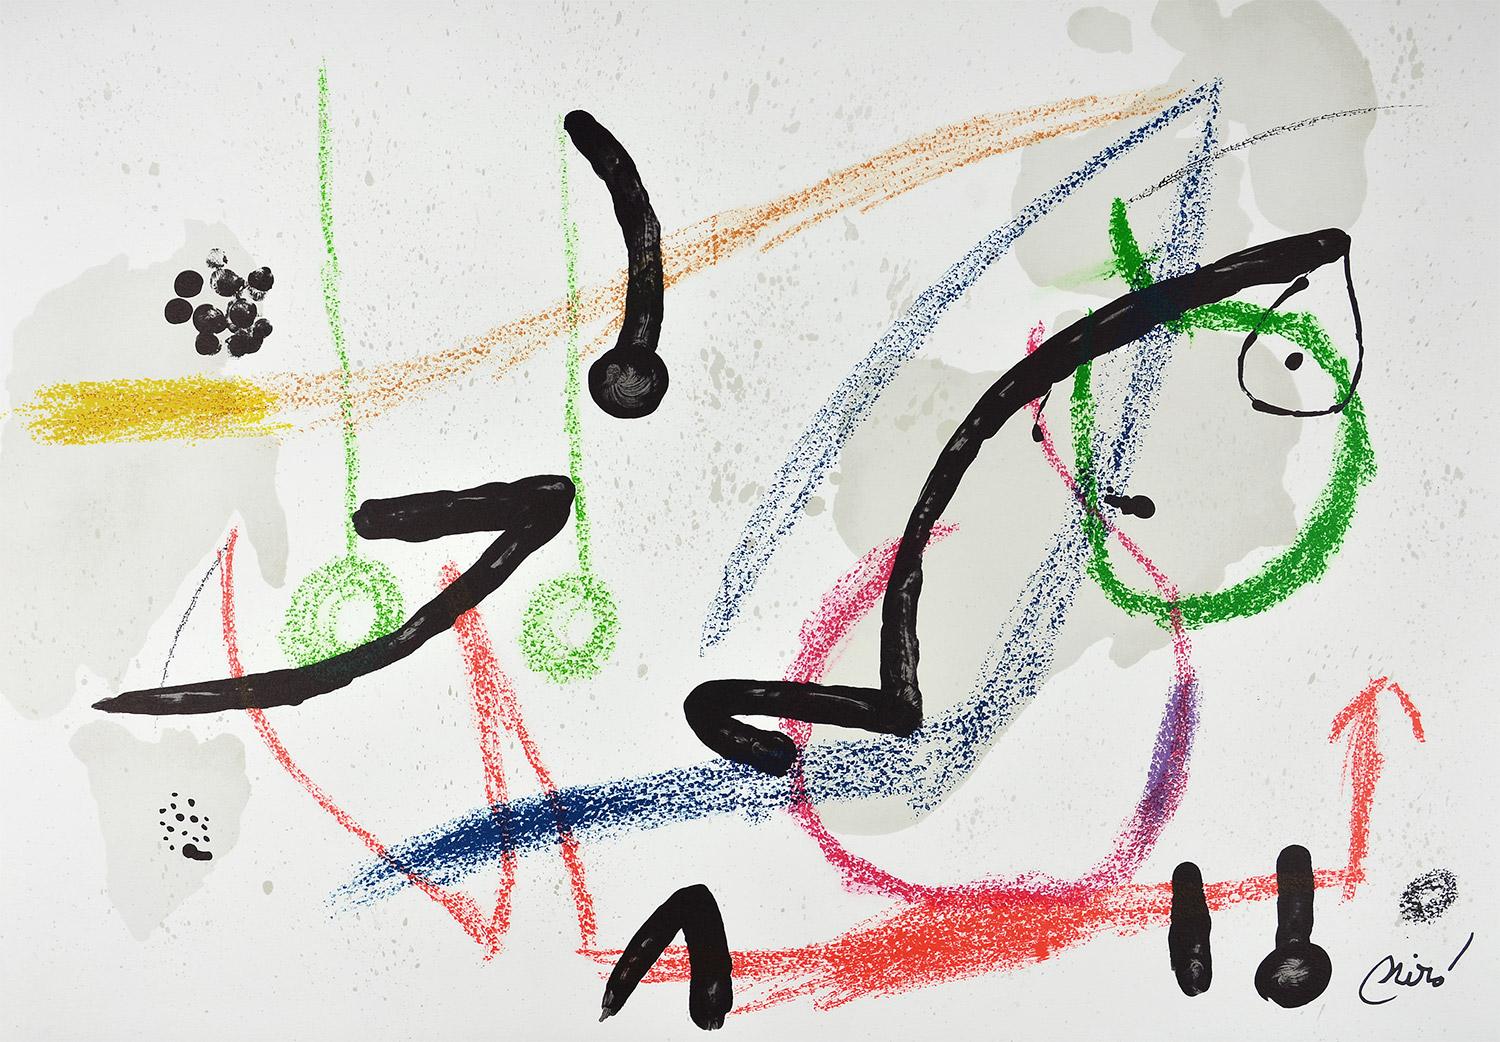 Joan Miró - Maravillas con variaciones acrósticas en el jardín de Miró VII
Date of creation: 1975
Medium: Lithograph on Gvarro paper
Edition: 1500
Size: 49,5 x 71 cm
Observations: Lithograph on Gvarro paper plate signed. Edited by Polígrafa,